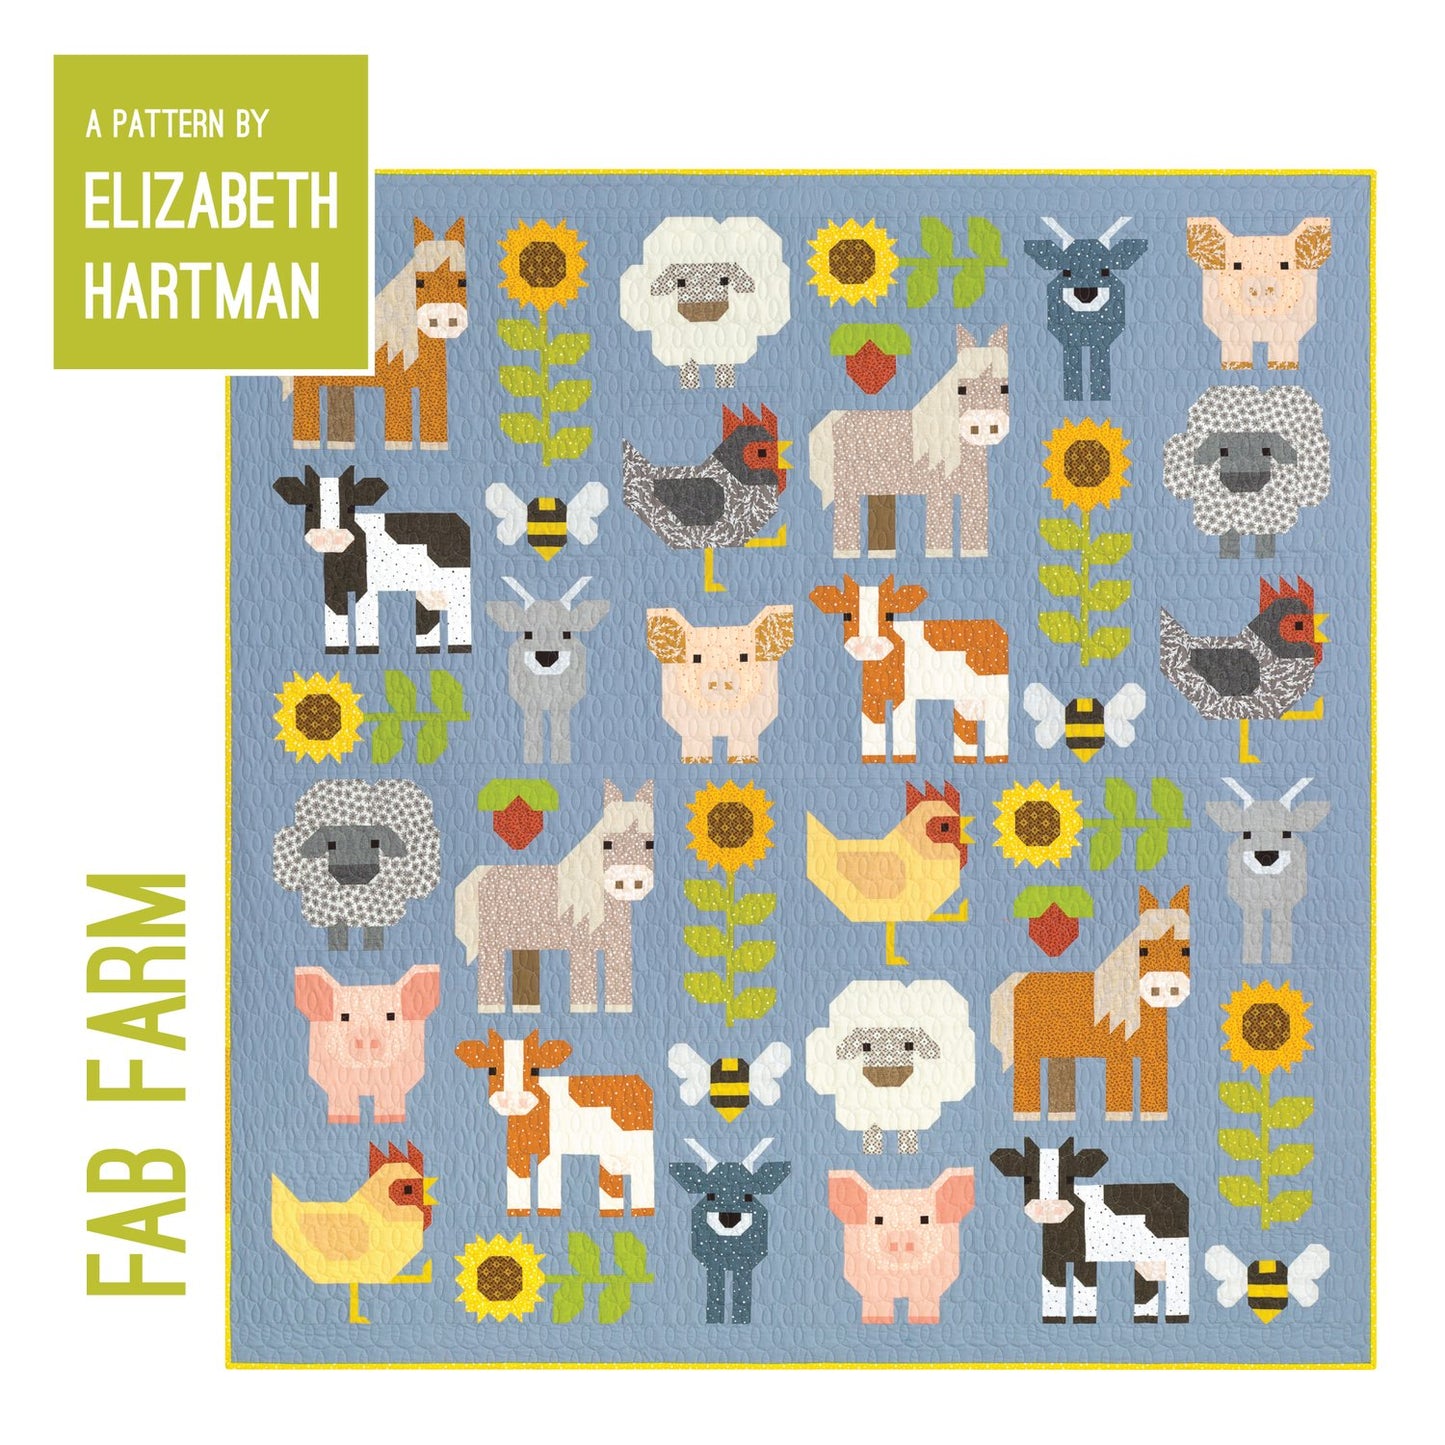 Fab Farm Quilt Pattern by Elizabeth Hartman